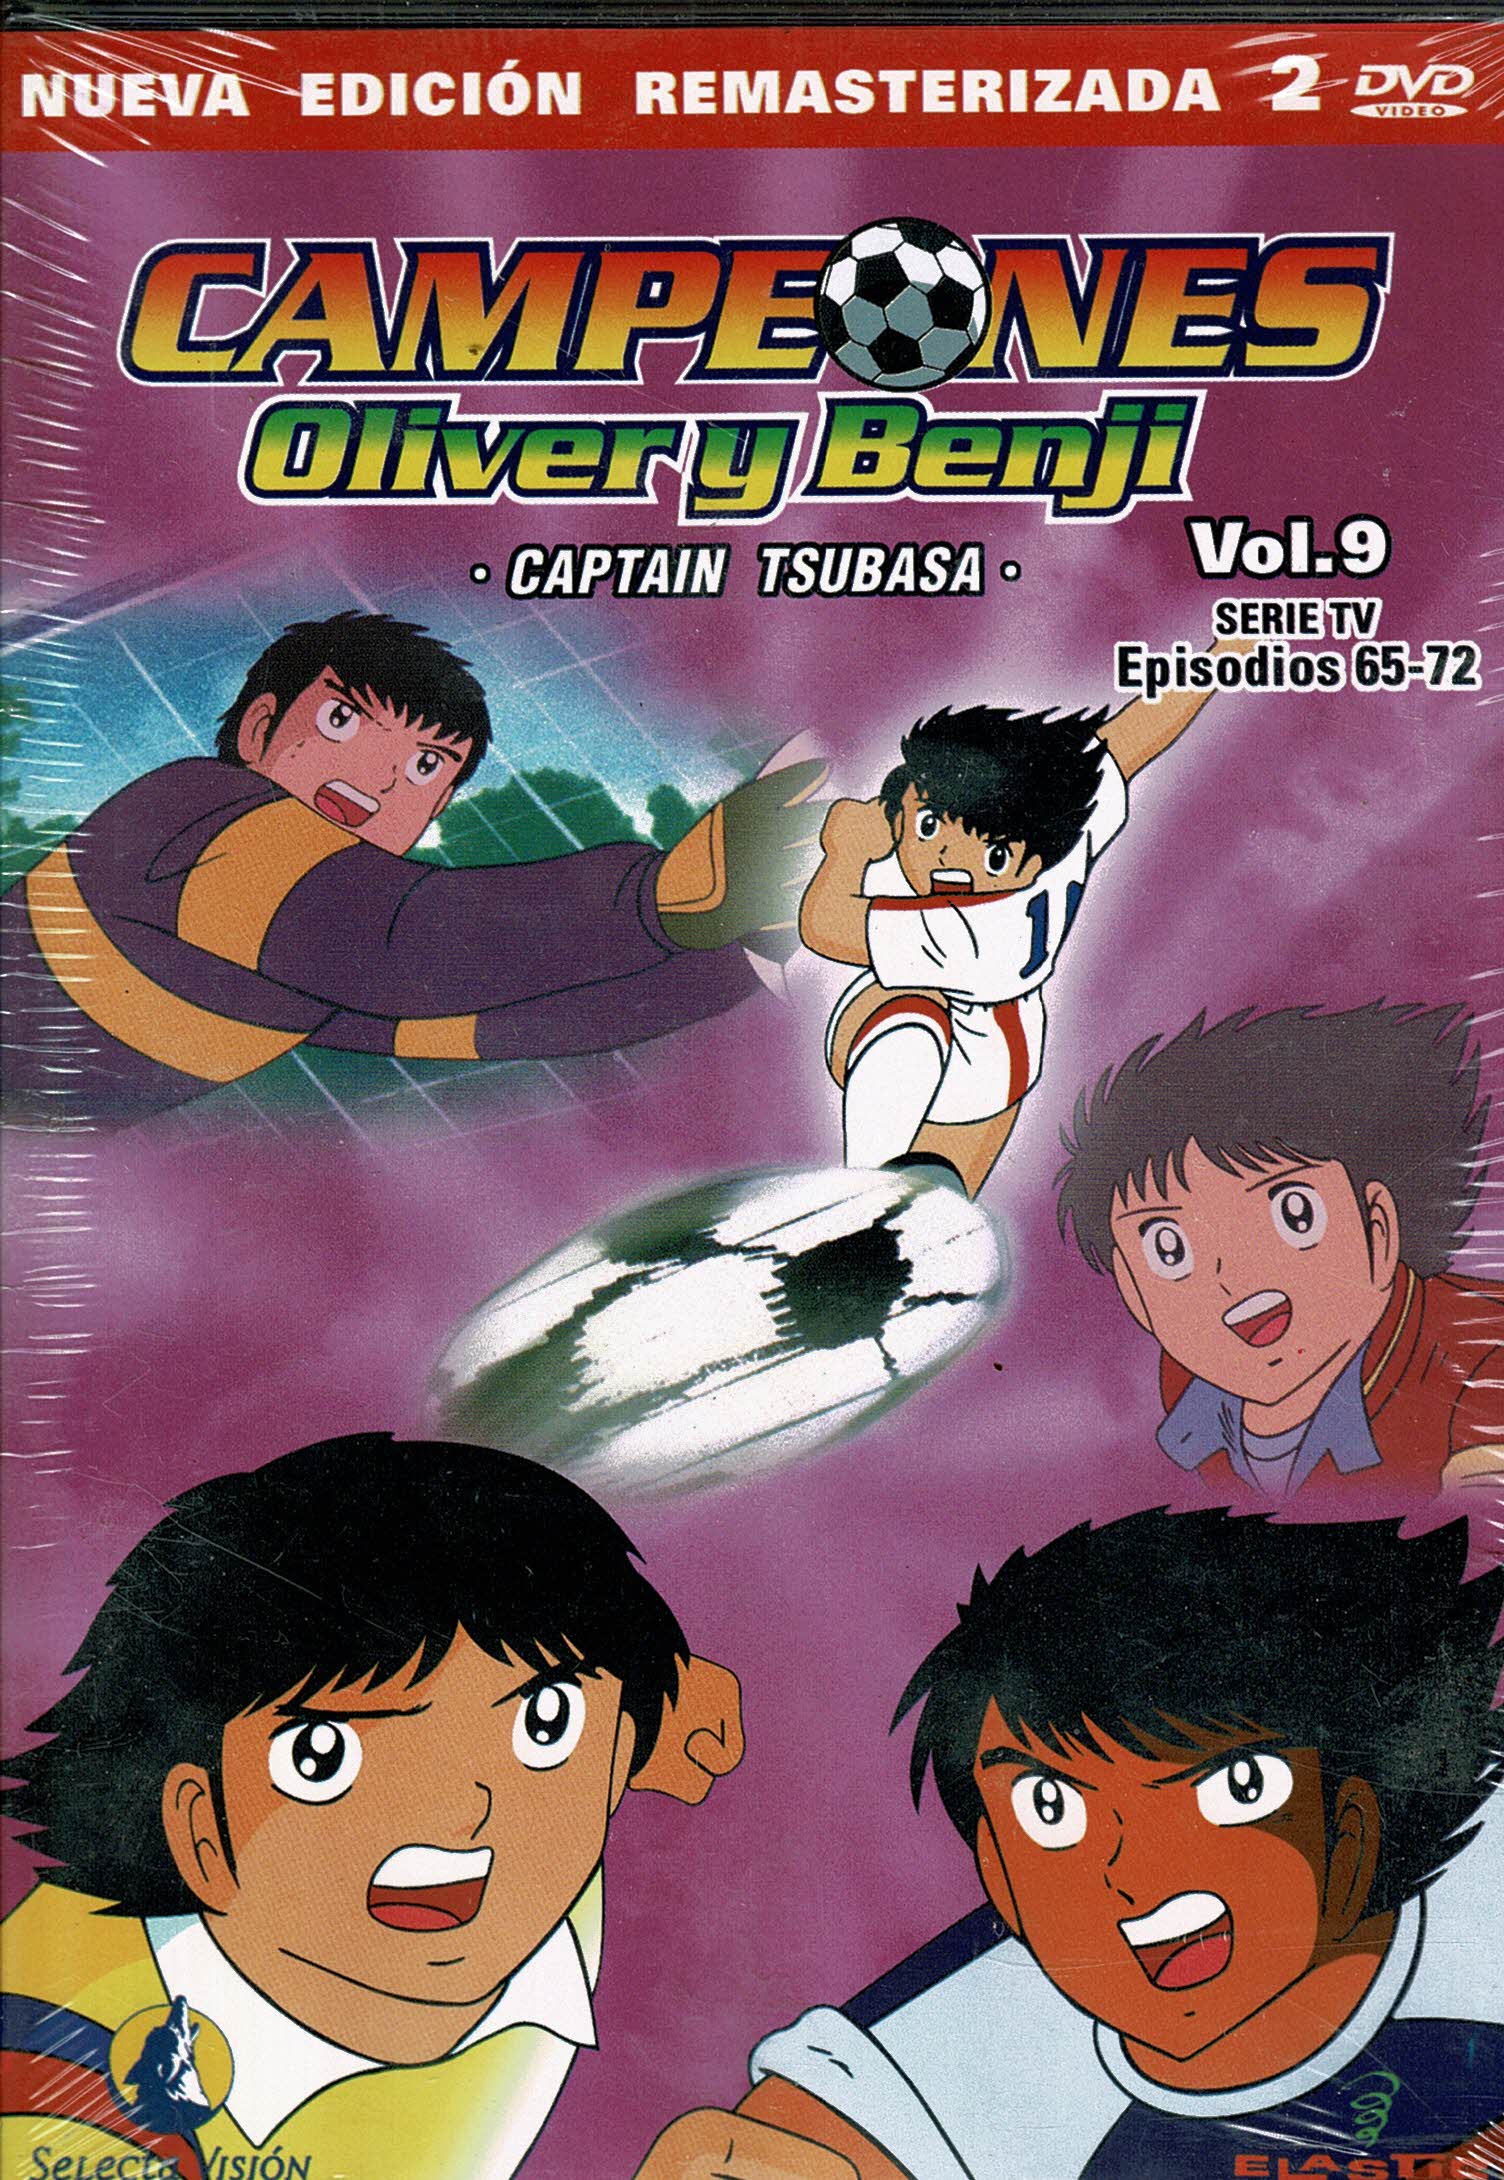 Campeones Oliver y Benji *captain tsubasa* Vol 9 Episodios 65-72